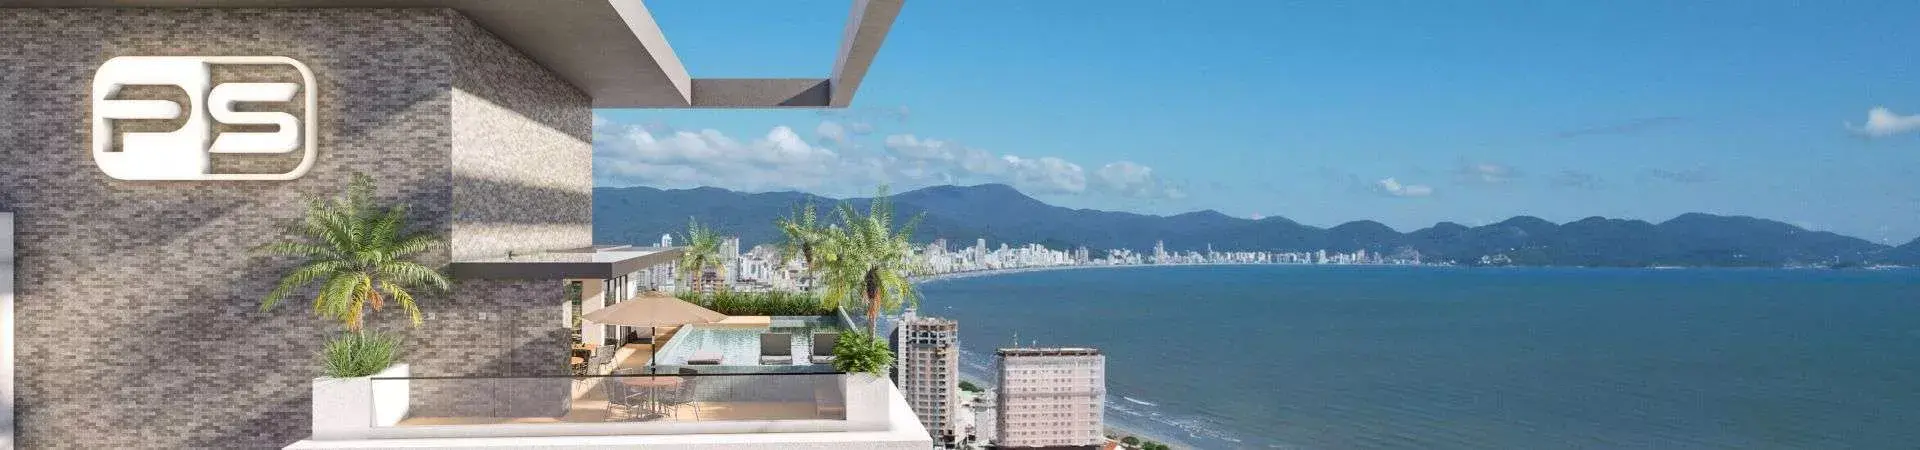 Fachada do Porto Belo Tower Vertical Home, da PS